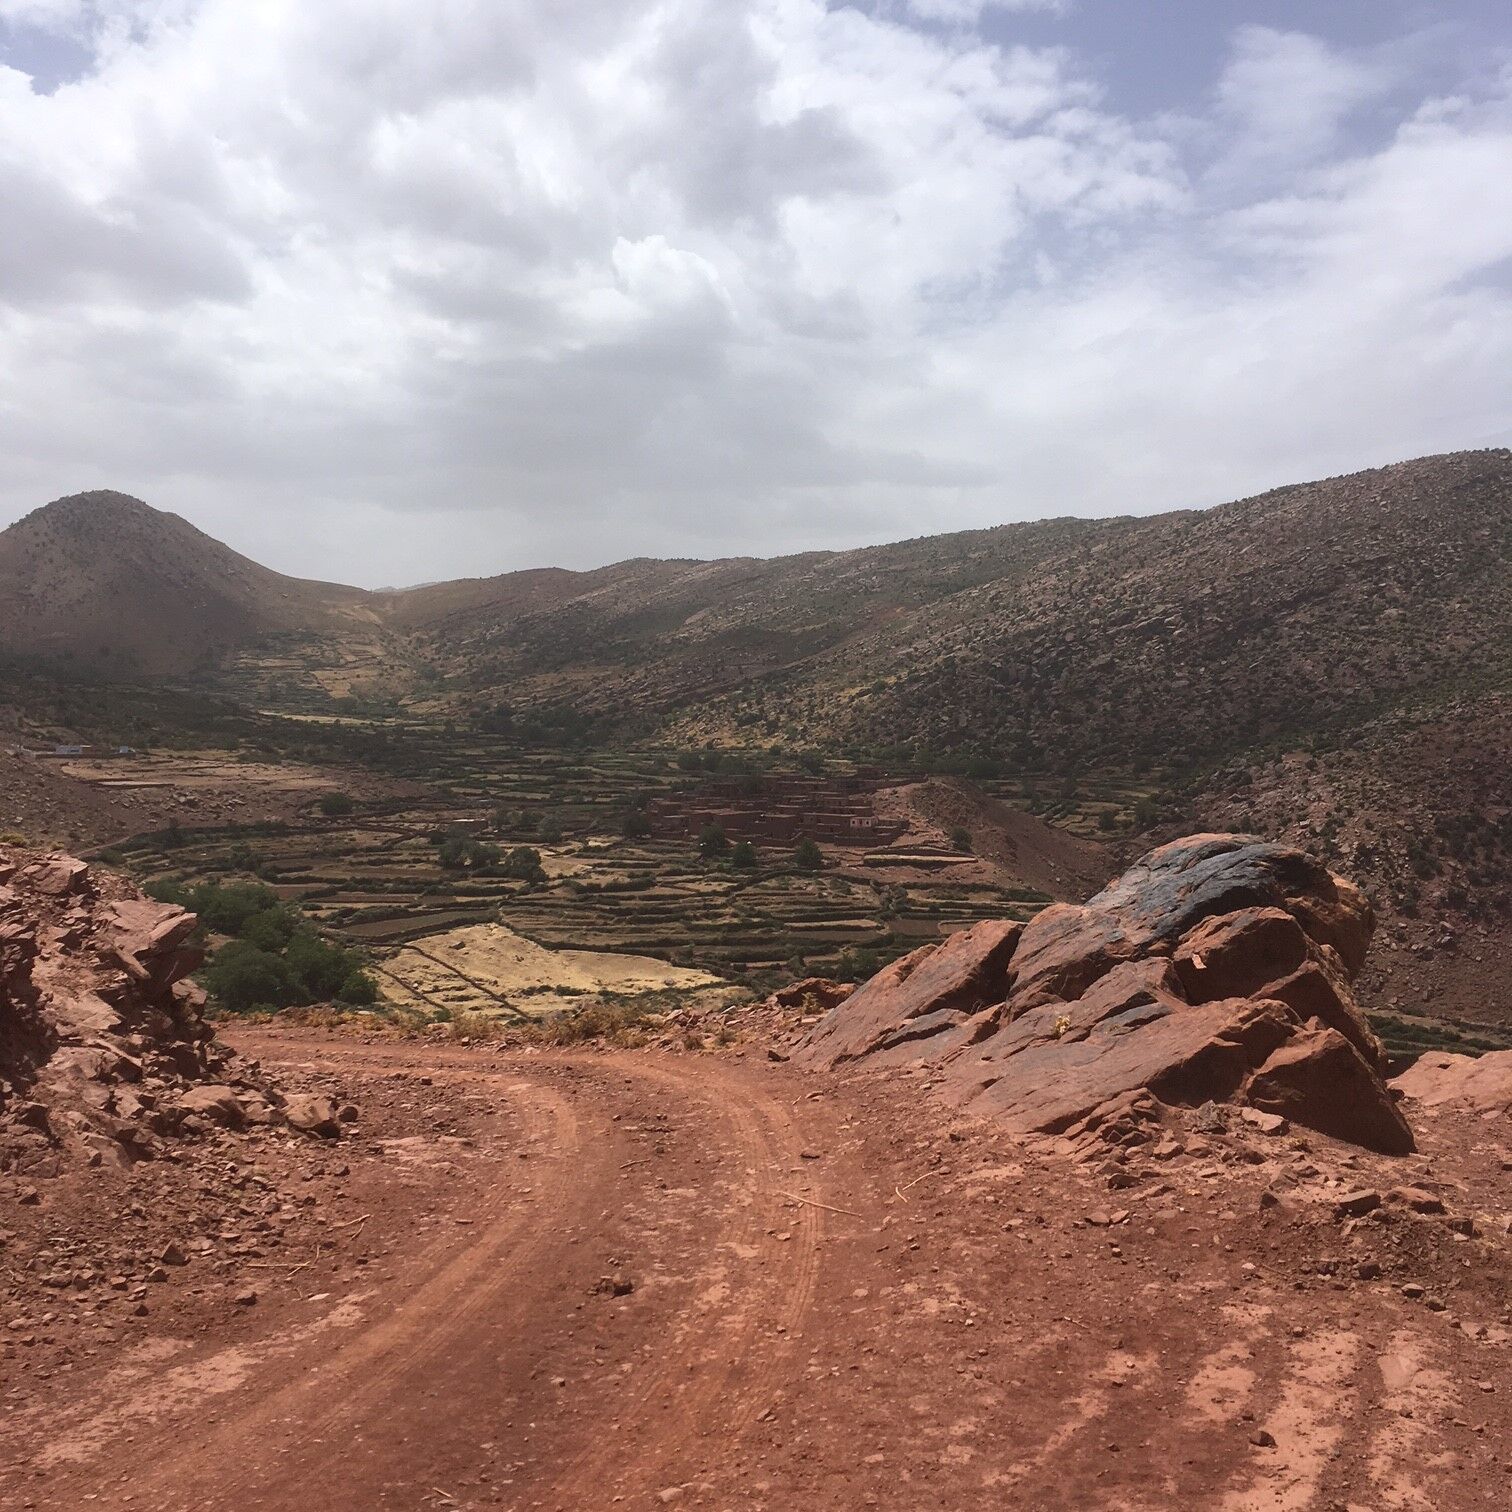 Marocco landscape